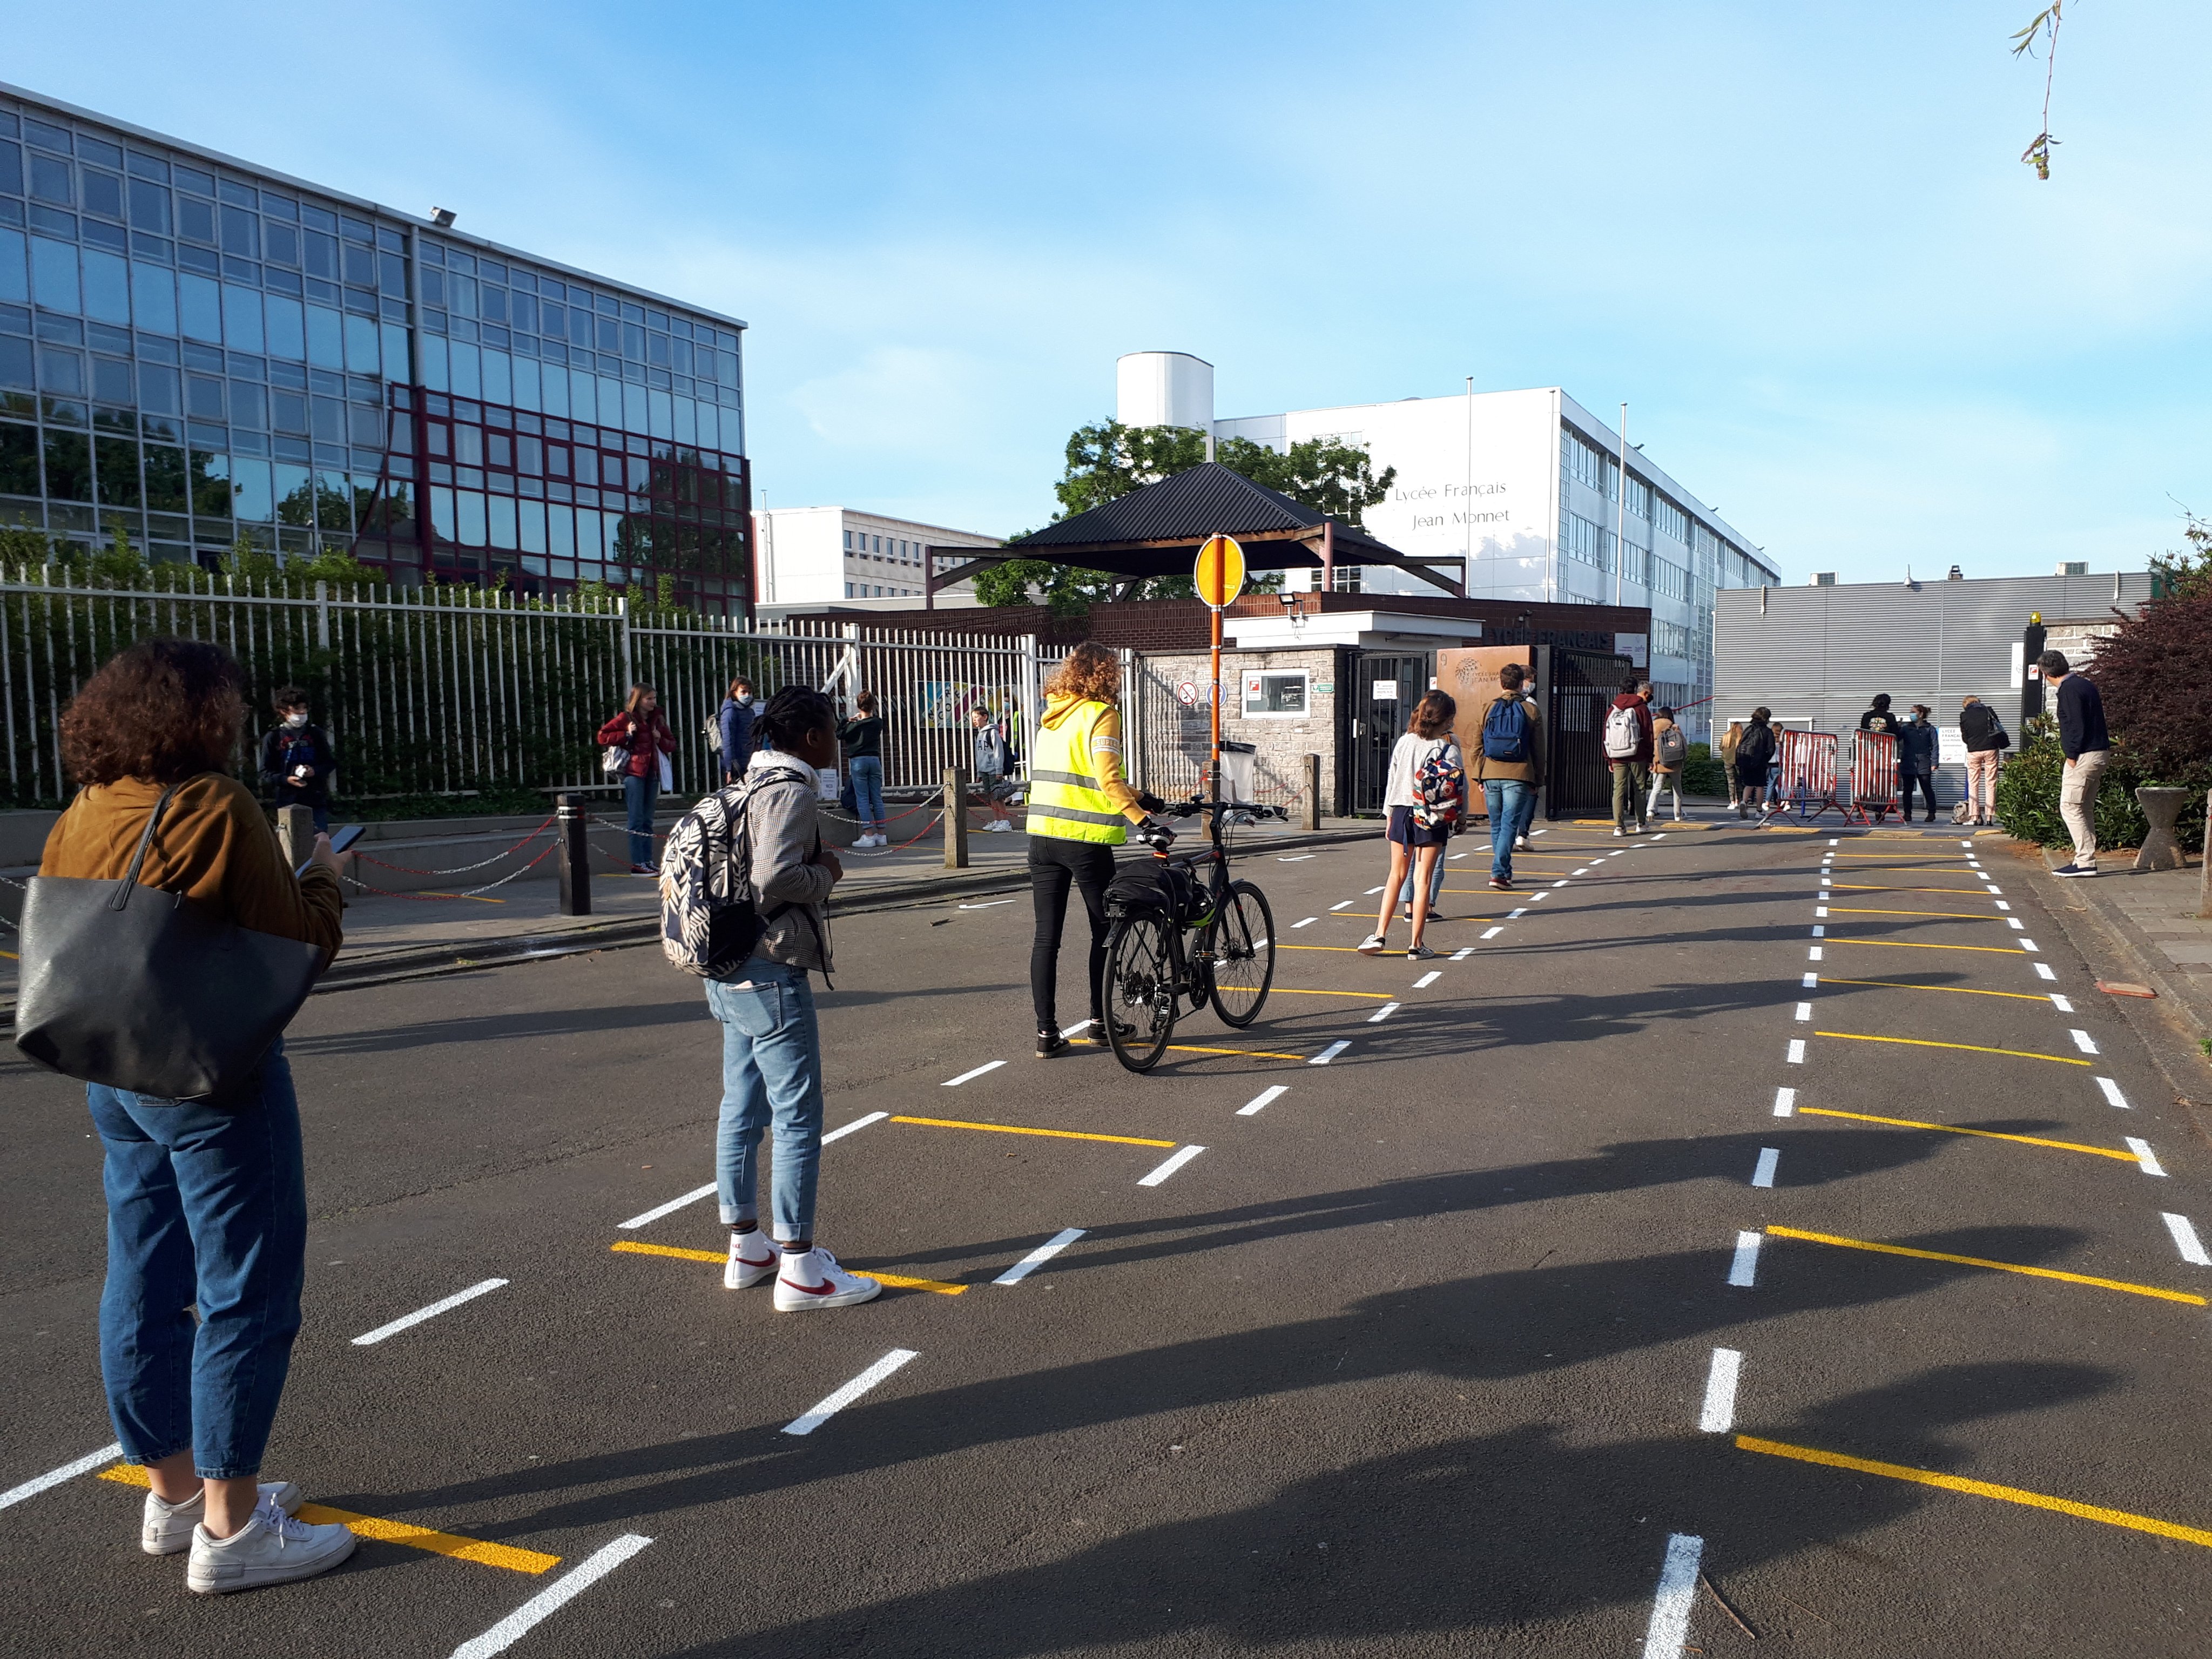 France Belgique Culture 🇫🇷🇧🇪 on Twitter: "Le Lycée Français Jean-Monnet  à #Bruxelles a rouvert ses portes ce matin ! Les élèves reviennent par  petits groupes en suivant les règles de sécurité sanitaire